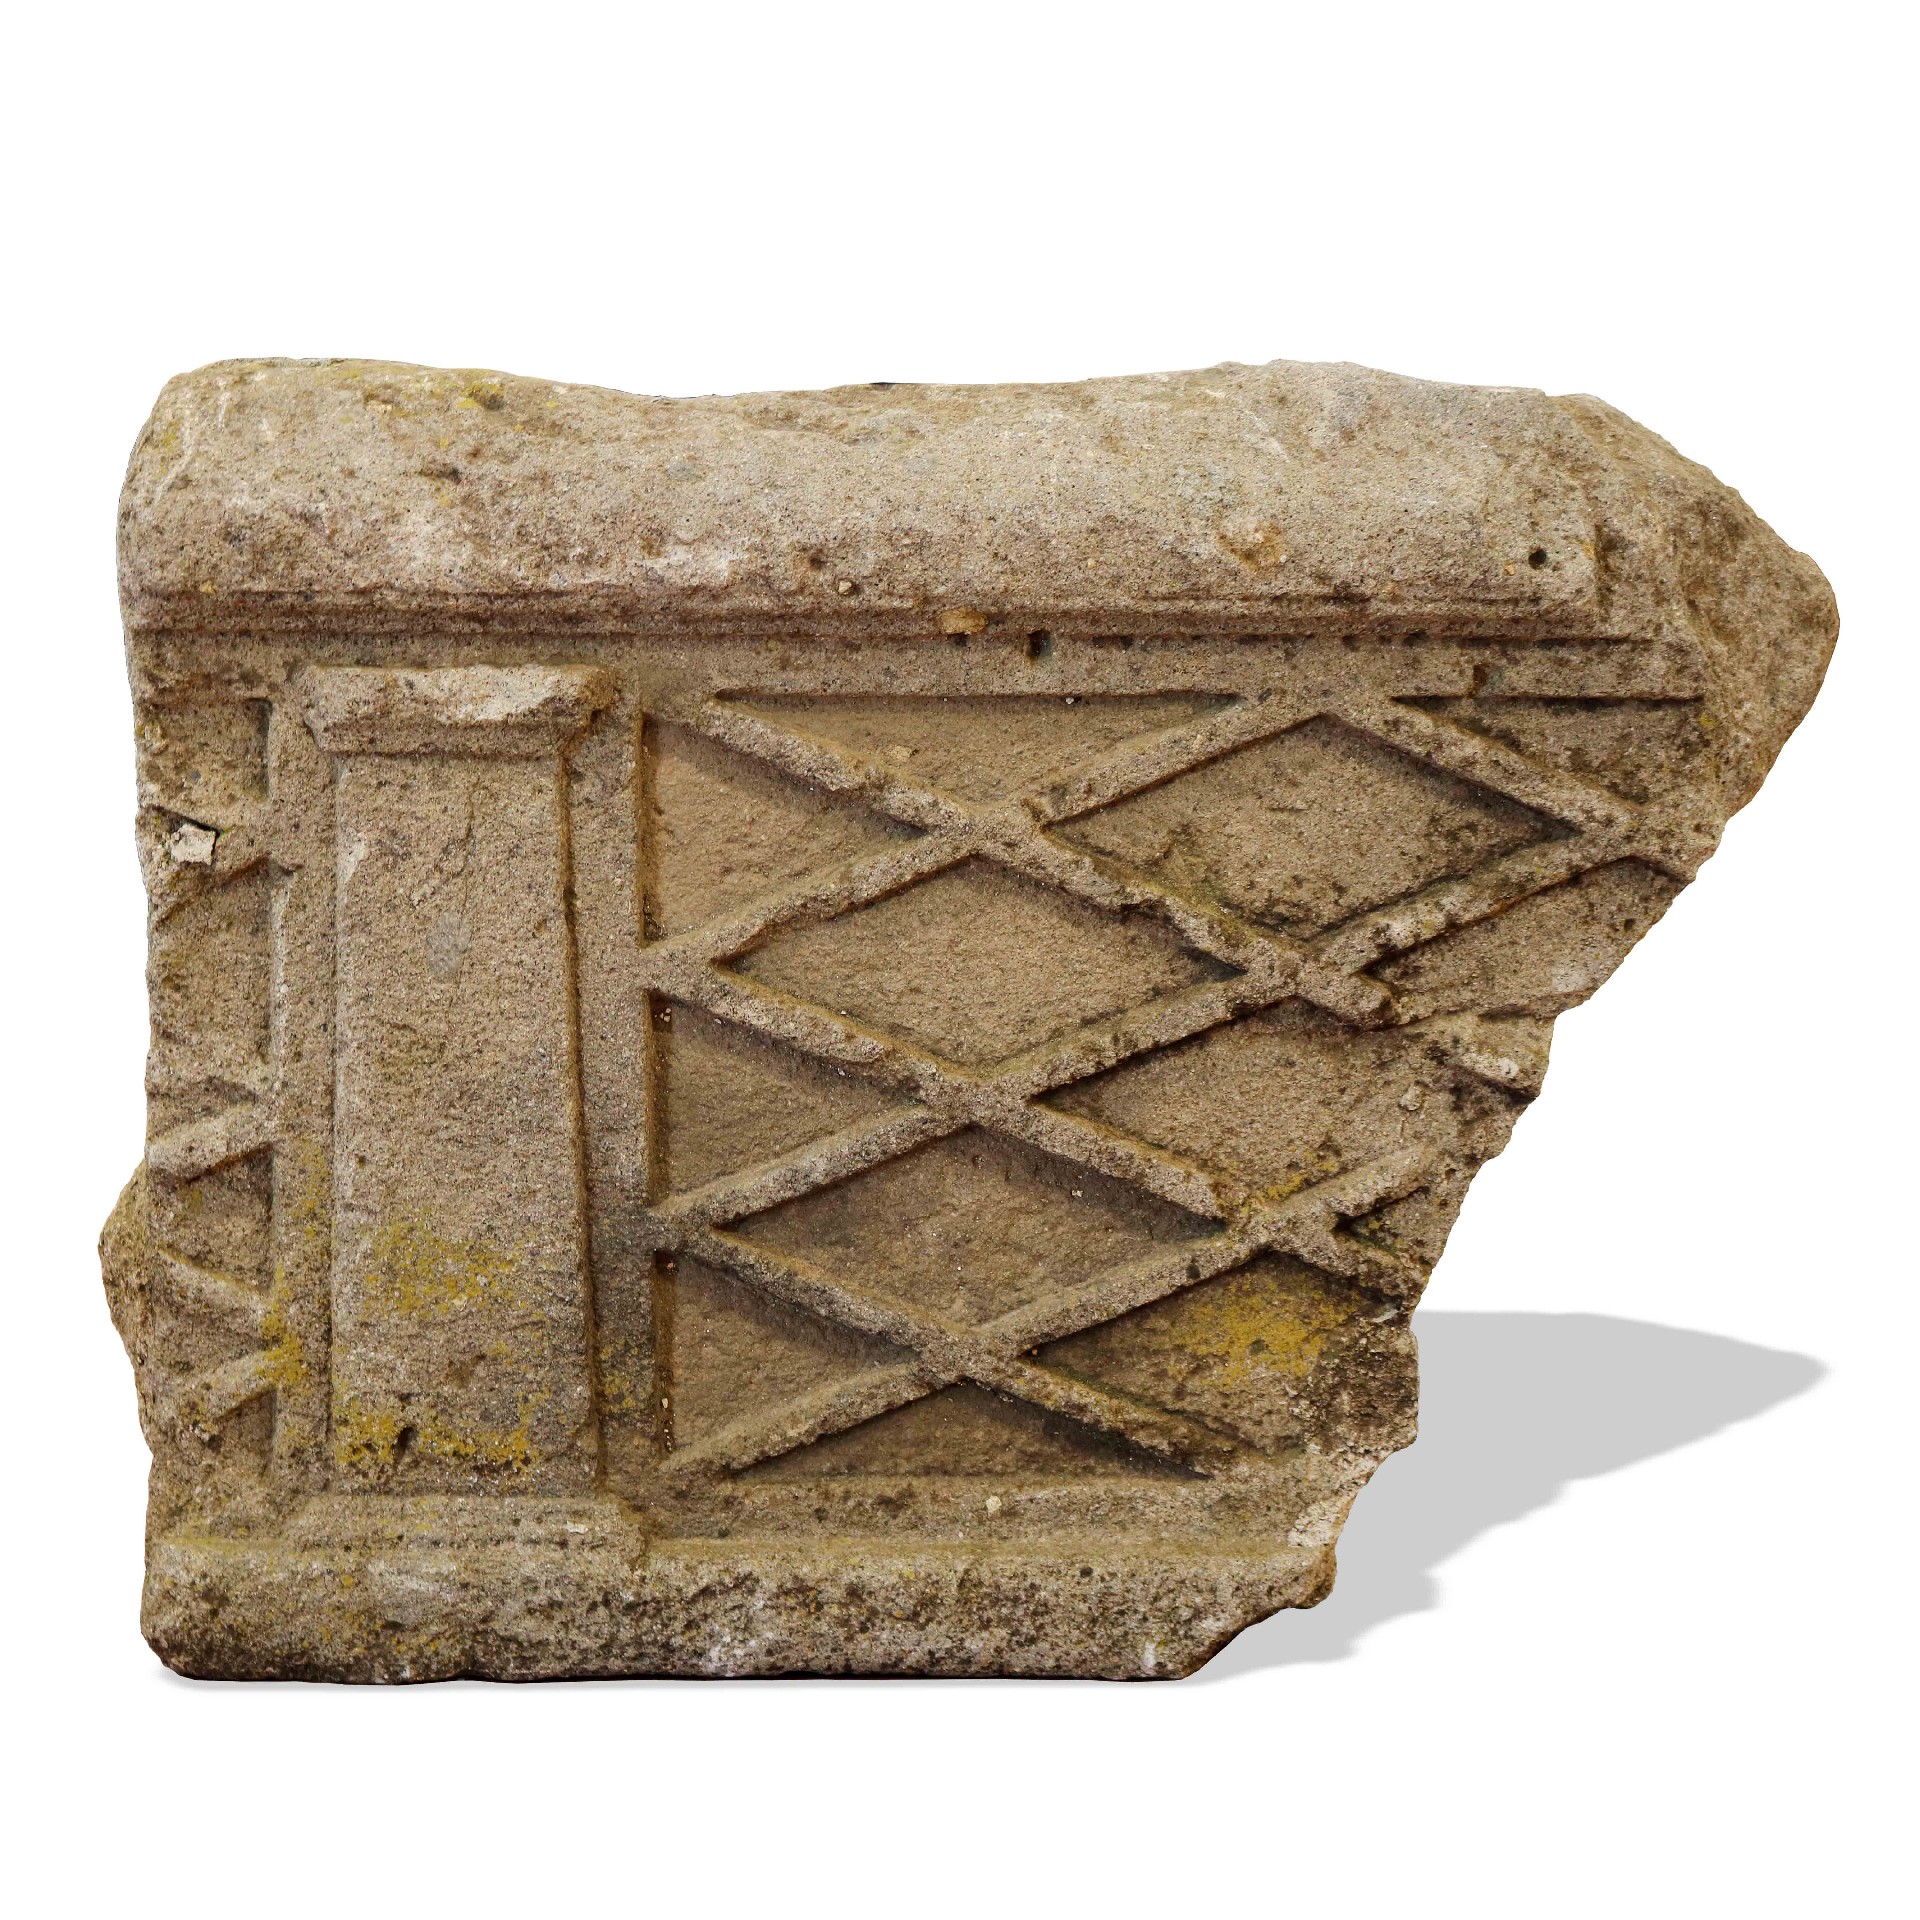 Antico frammento cornicione in pietra. - Elementi Architettonici - Architettura - Prodotti - Antichità Fiorillo